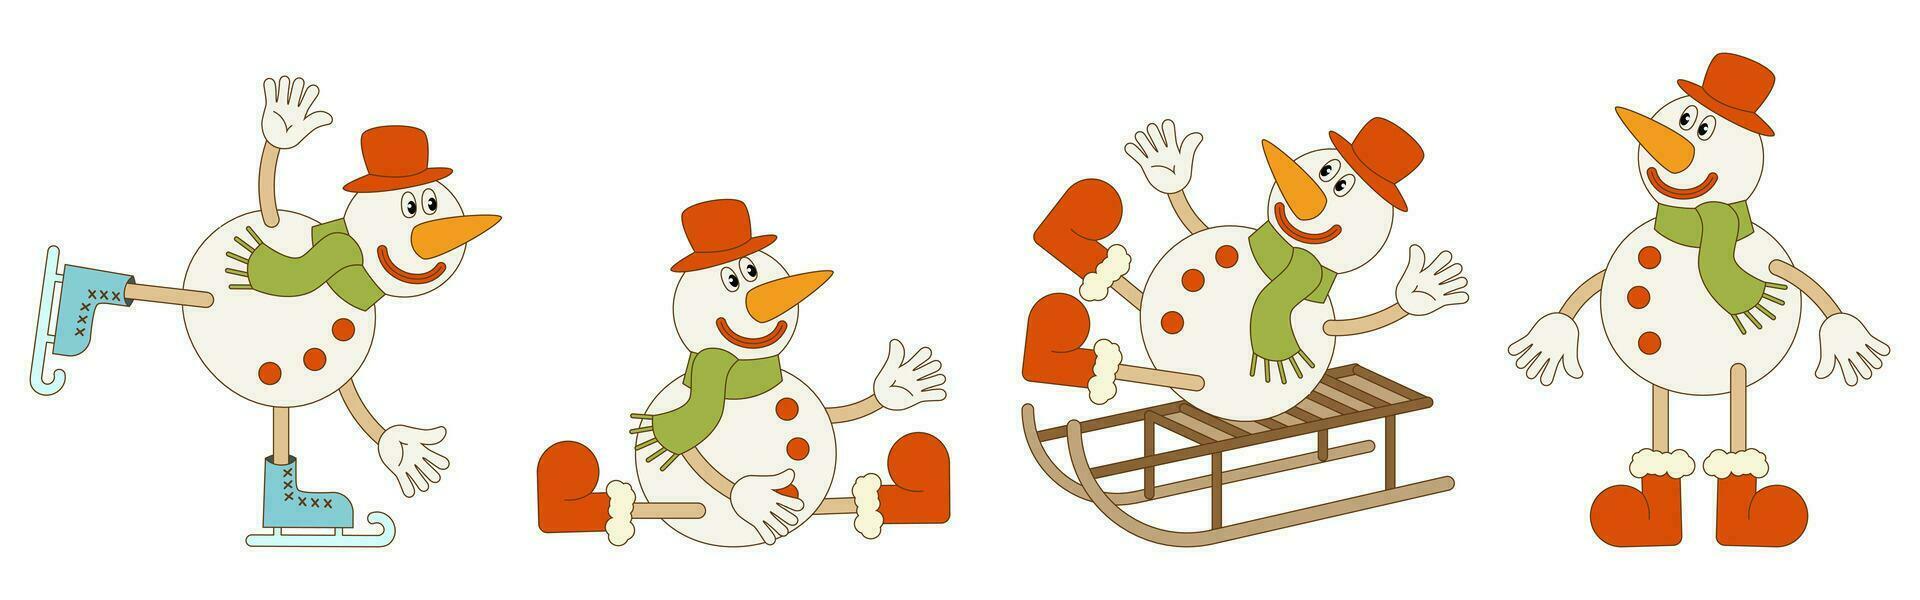 conjunto do Natal bonecos de neve dentro diferente poses. vetor ilustração dentro na moda groovy retro estilo. branco fundo.